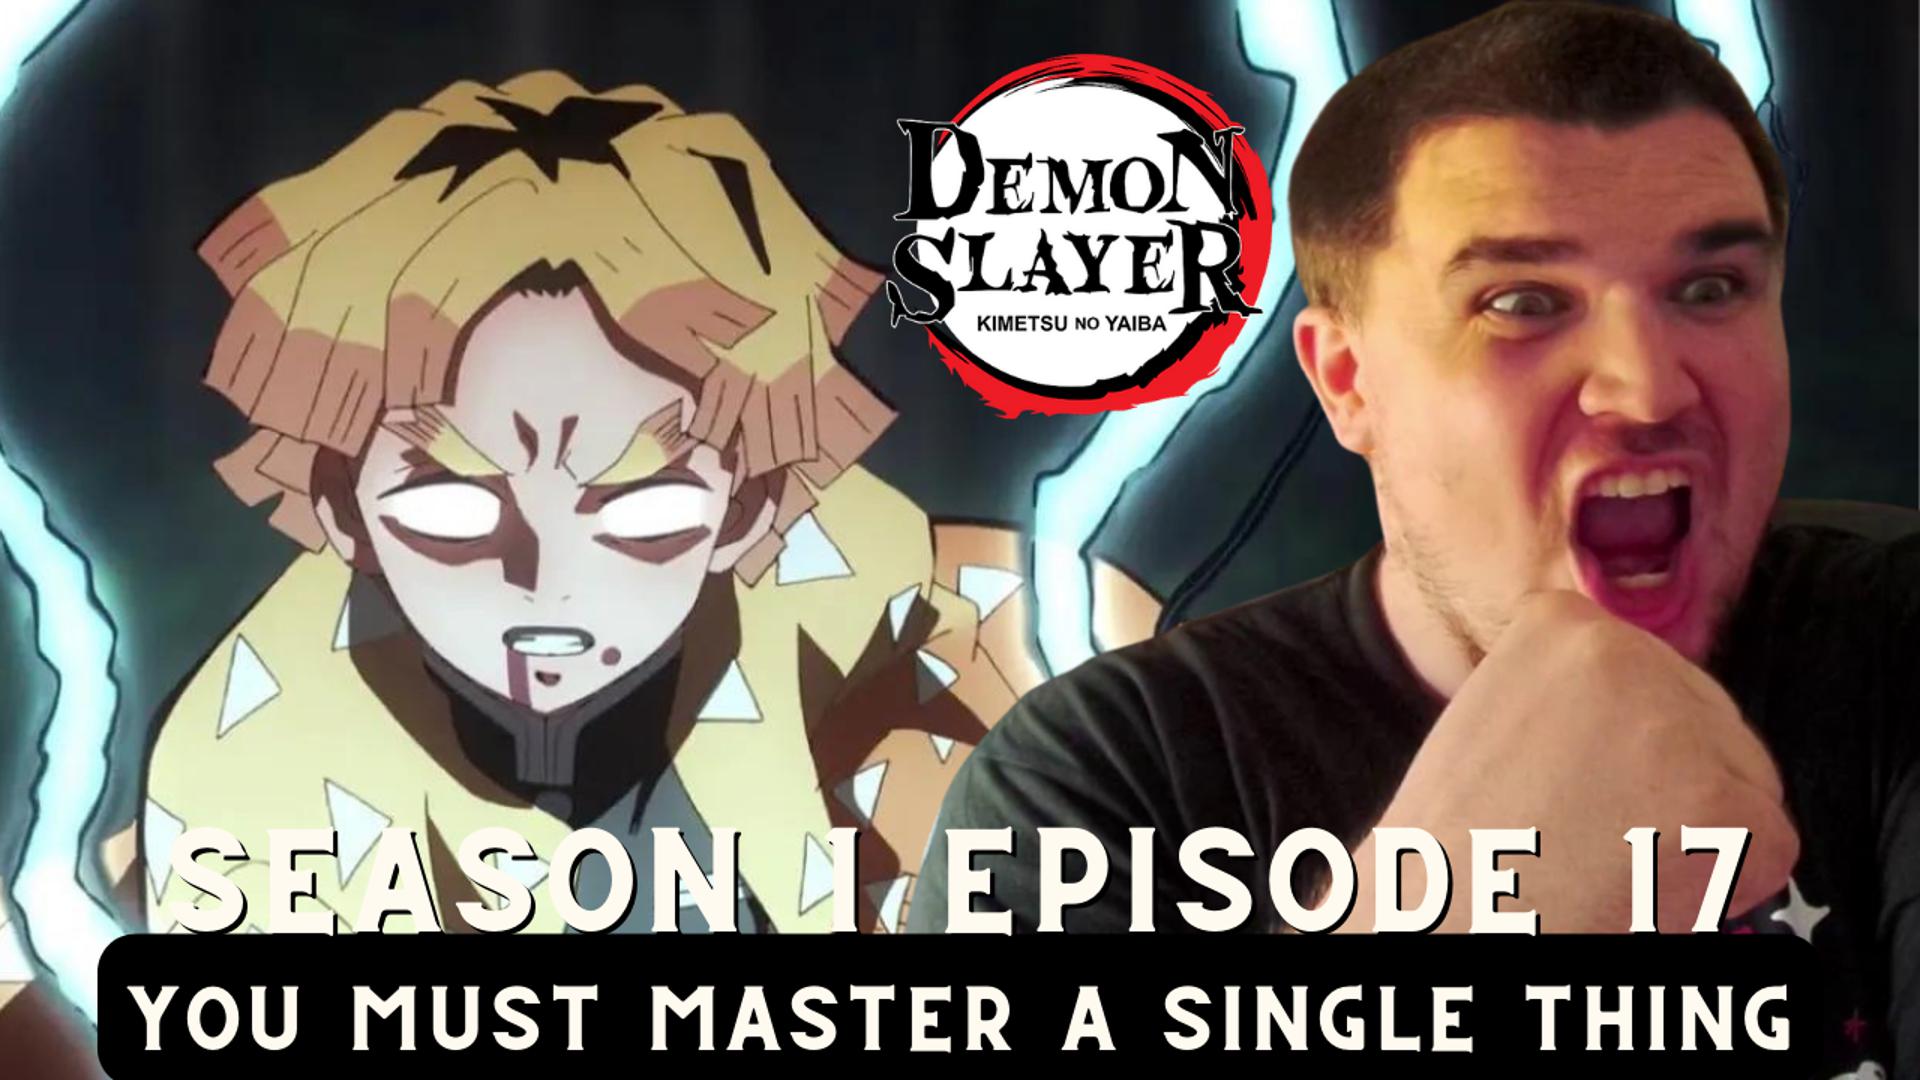 Demon Slayer: Kimetsu no Yaiba season 1 episode 17 by taniadillon